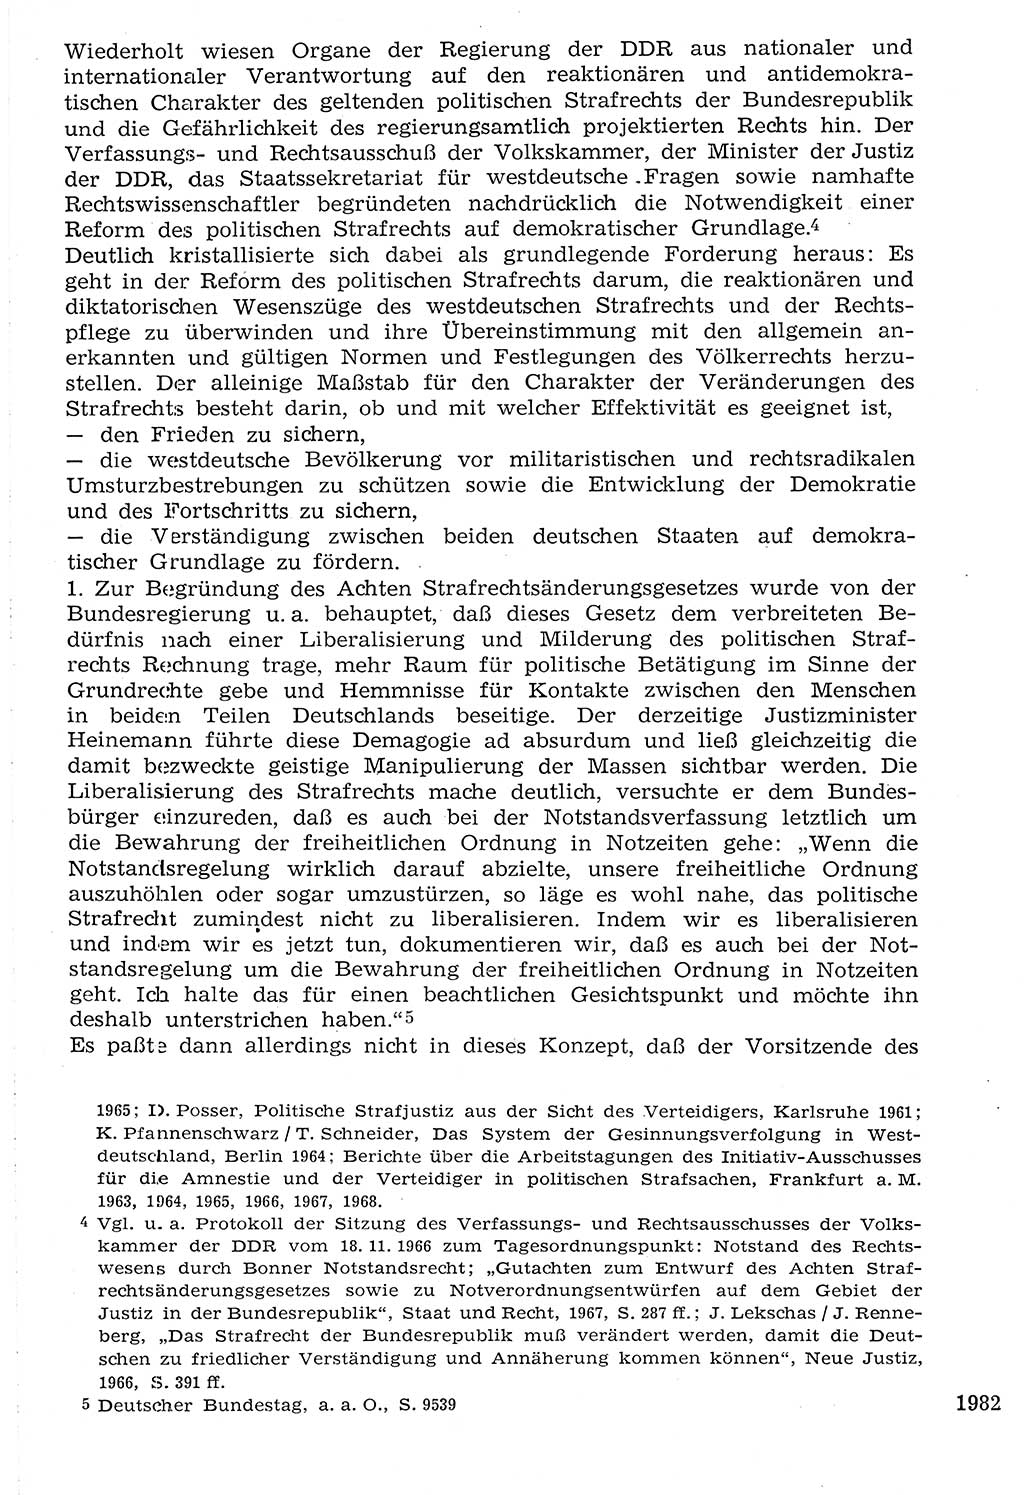 Staat und Recht (StuR), 17. Jahrgang [Deutsche Demokratische Republik (DDR)] 1968, Seite 1982 (StuR DDR 1968, S. 1982)